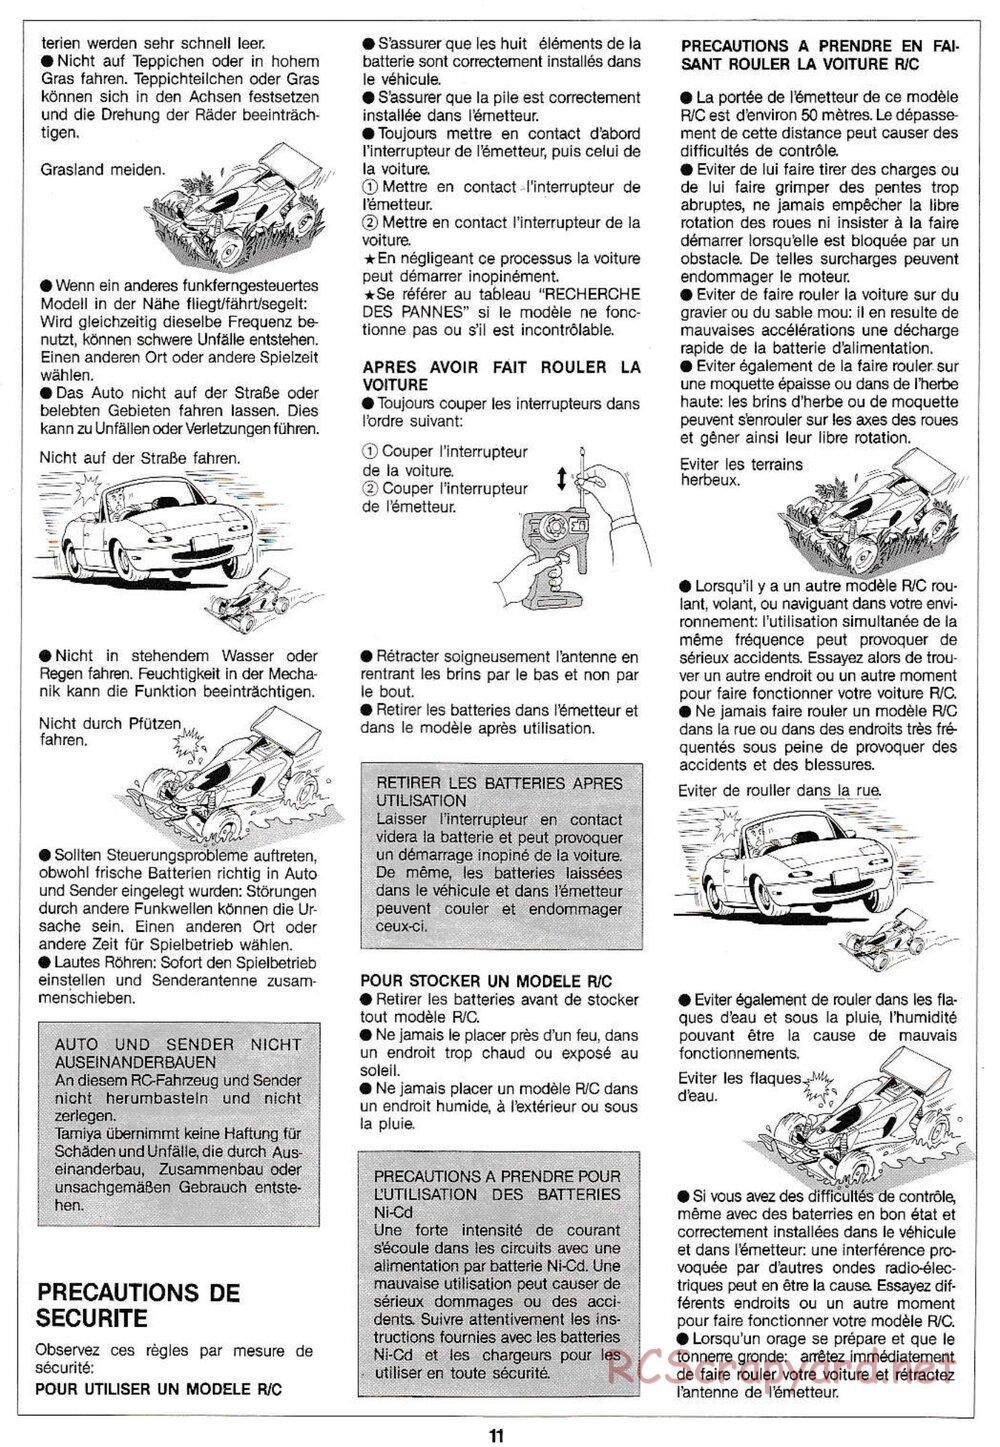 Tamiya - Manta Ray QD Chassis - Manual - Page 11